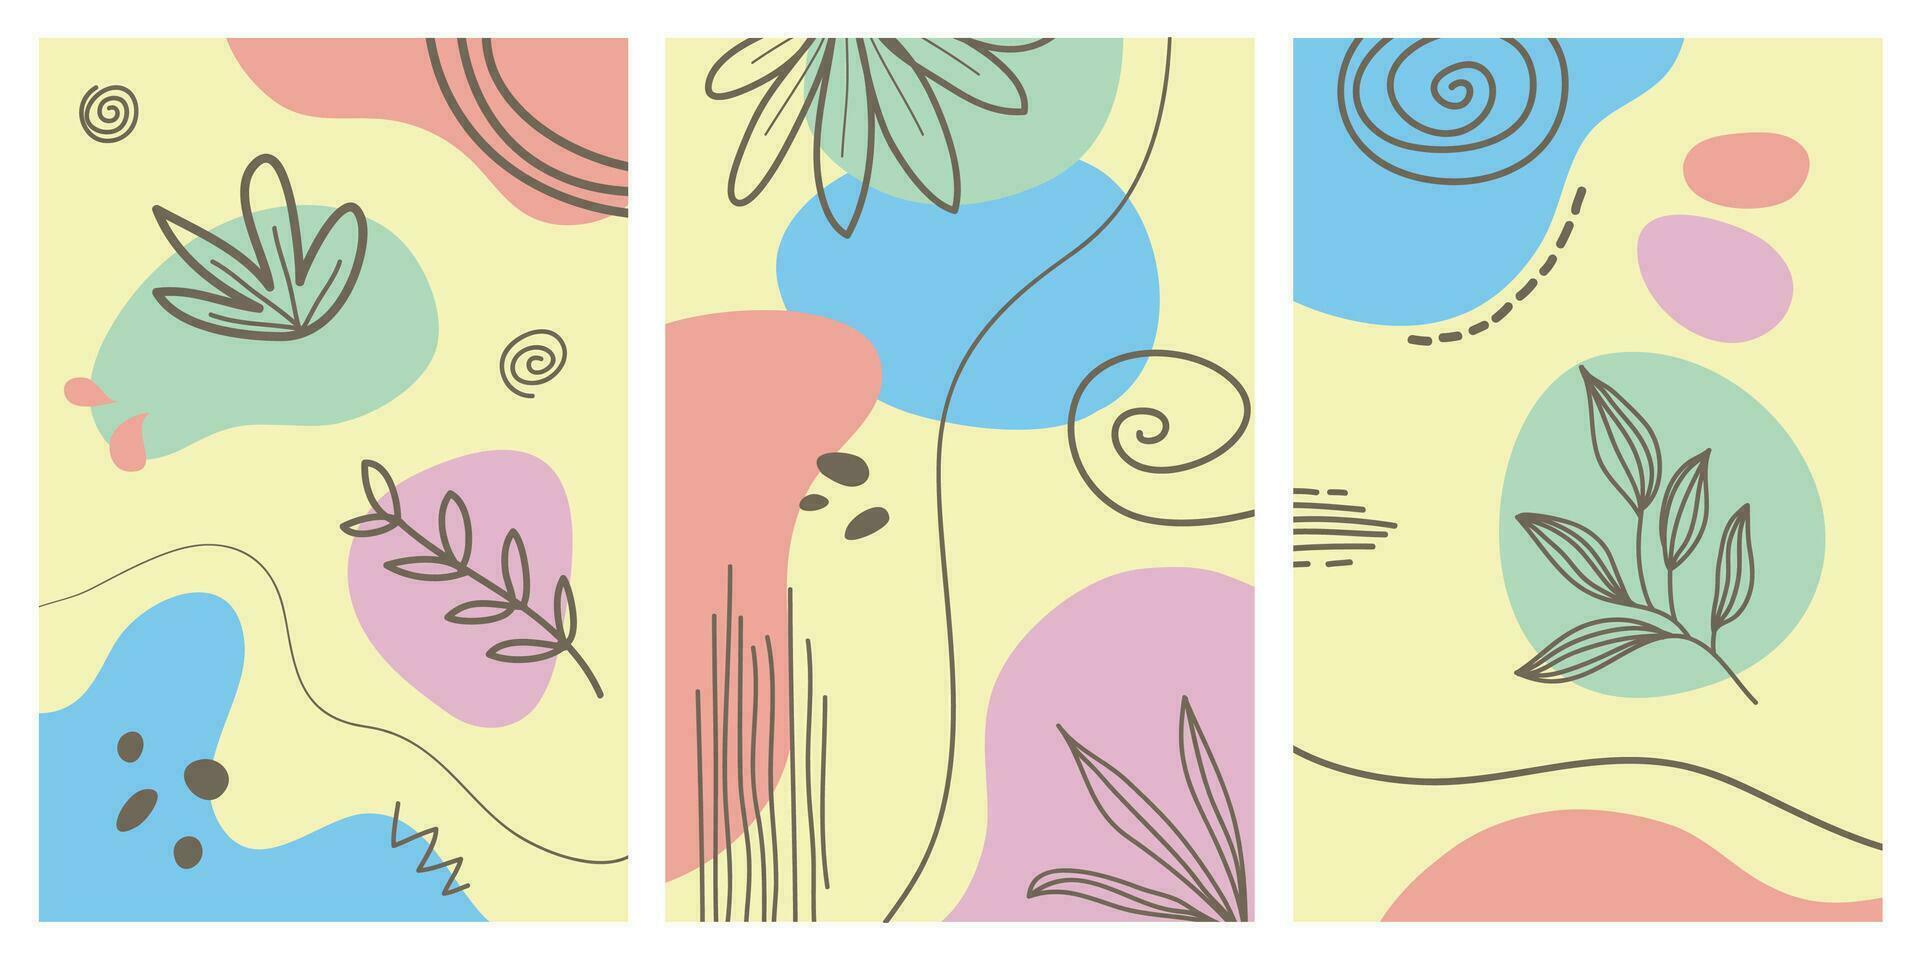 collection d'affiches d'art contemporain aux couleurs pastel. papier abstrait découpé des éléments géométriques et des traits, des feuilles et des points. excellent design pour les médias sociaux, les cartes postales, l'impression. vecteur